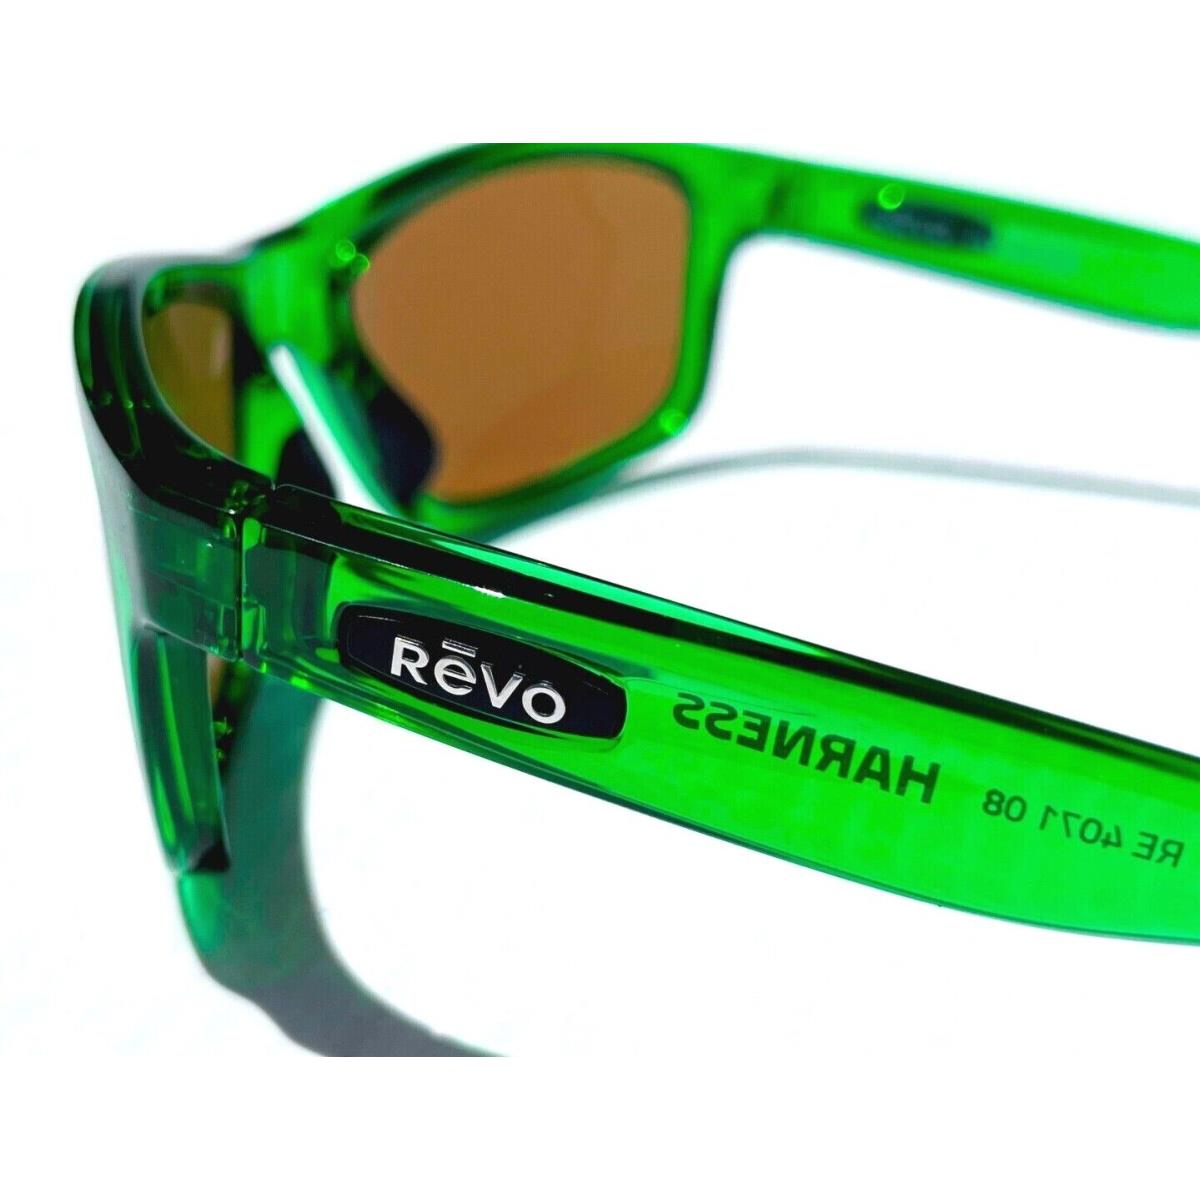 Revo sunglasses Harness - Green Frame, Green Lens 3